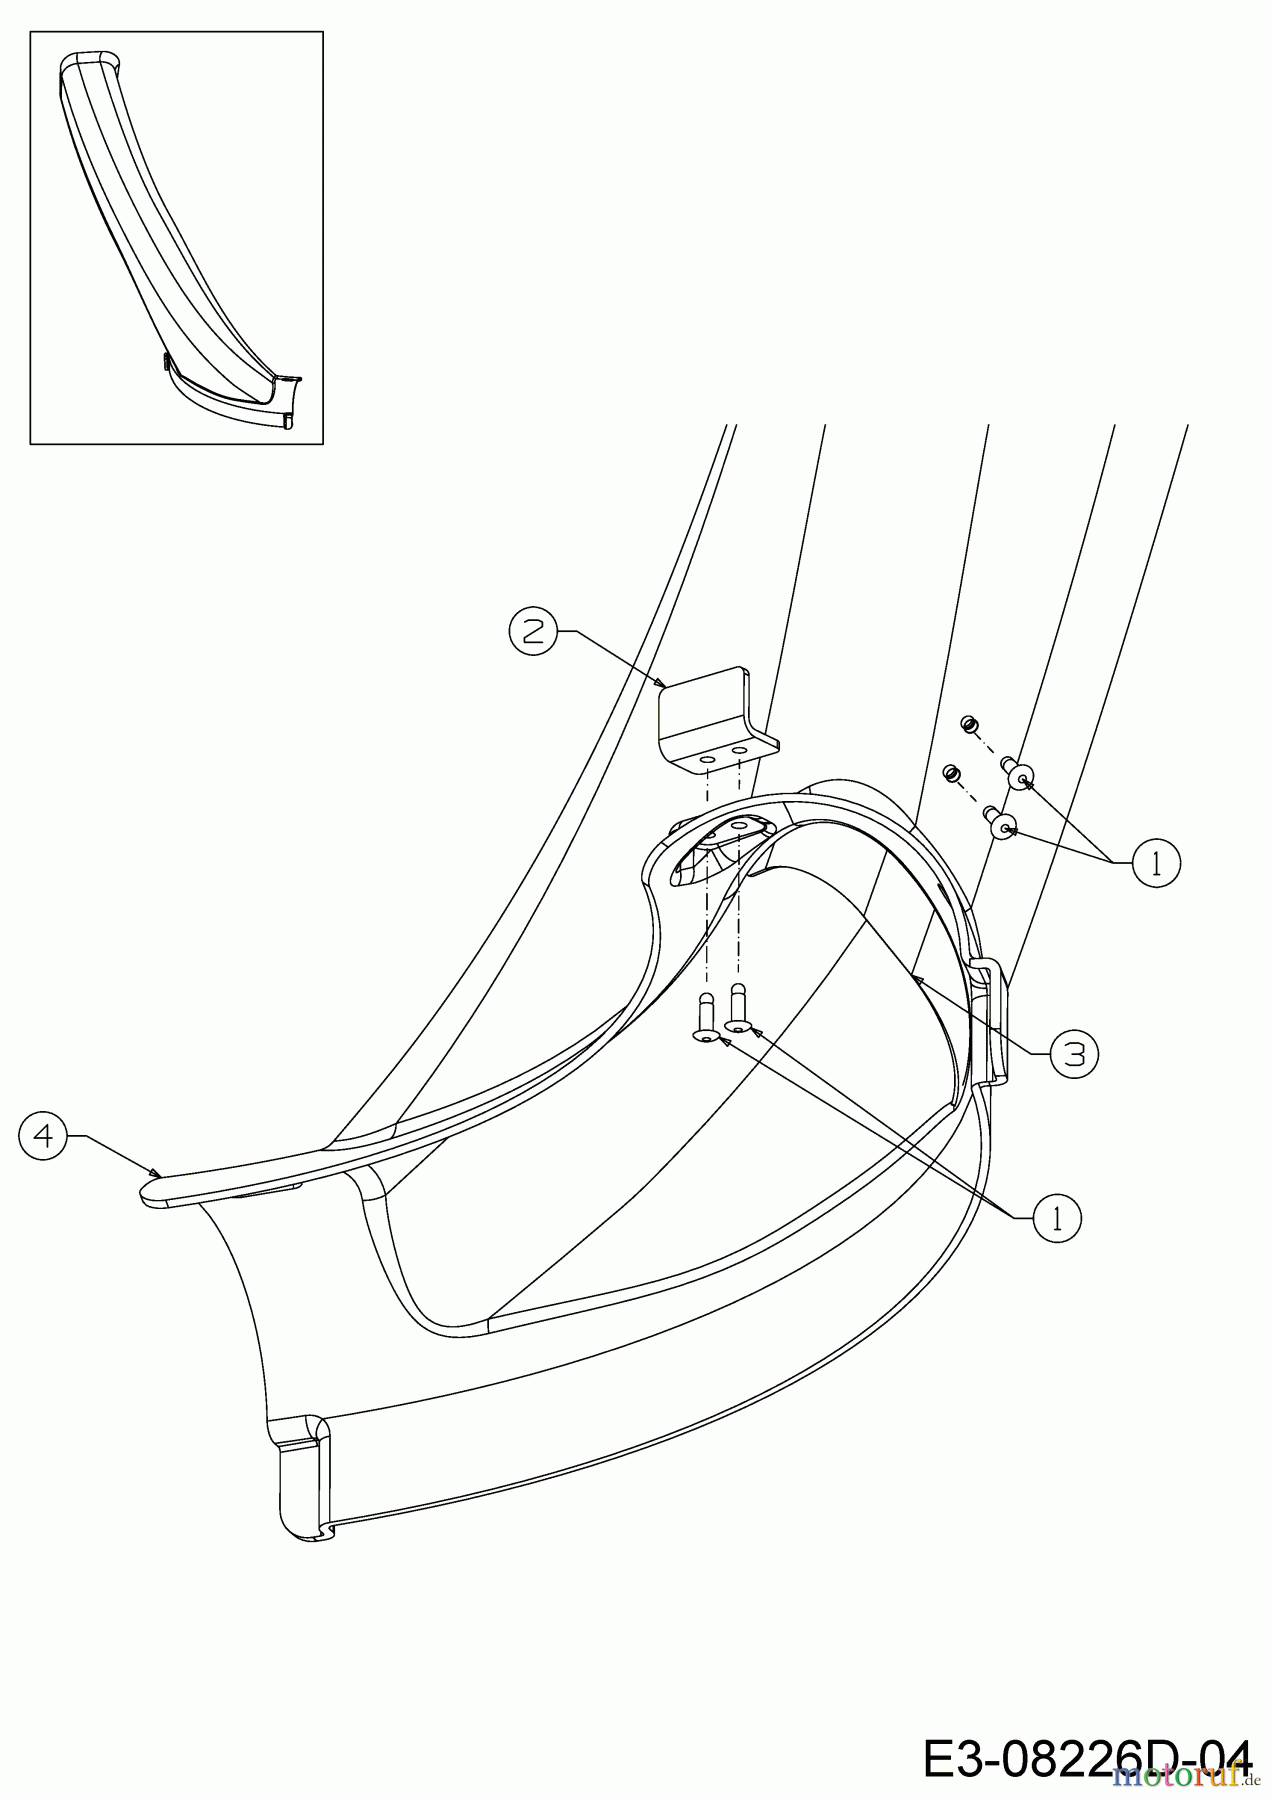  WOLF-Garten Expert Rasentraktoren Scooter Pro Hydro 13A221HD650  (2016) Auswurfschacht